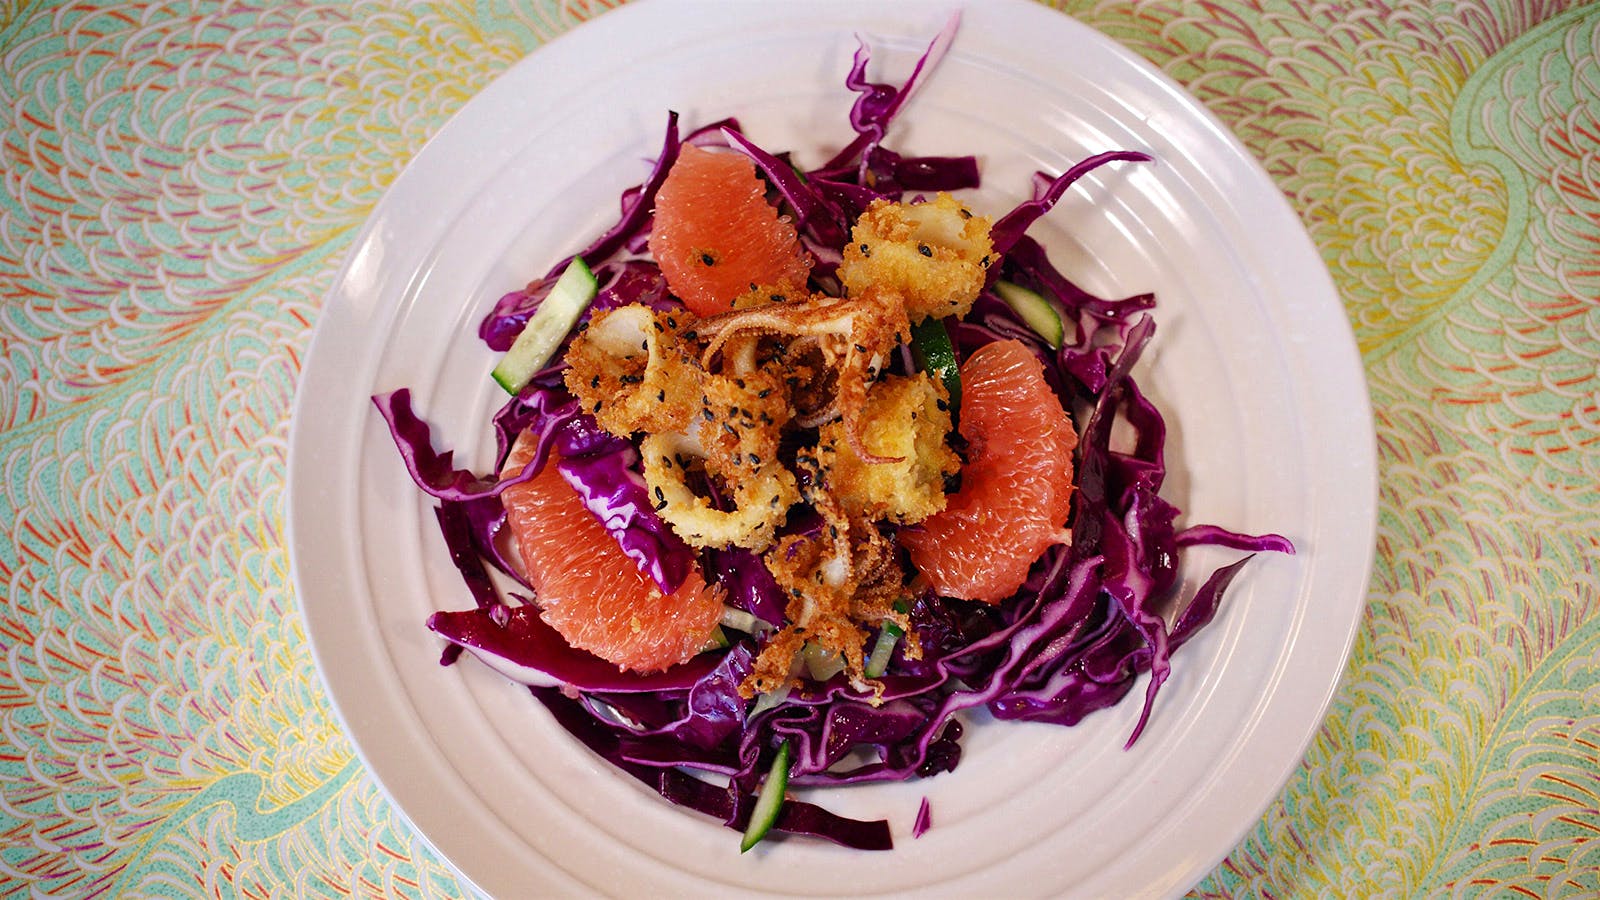 8 & $20: Sesame Calamari With Red Cabbage and Grapefruit Salad